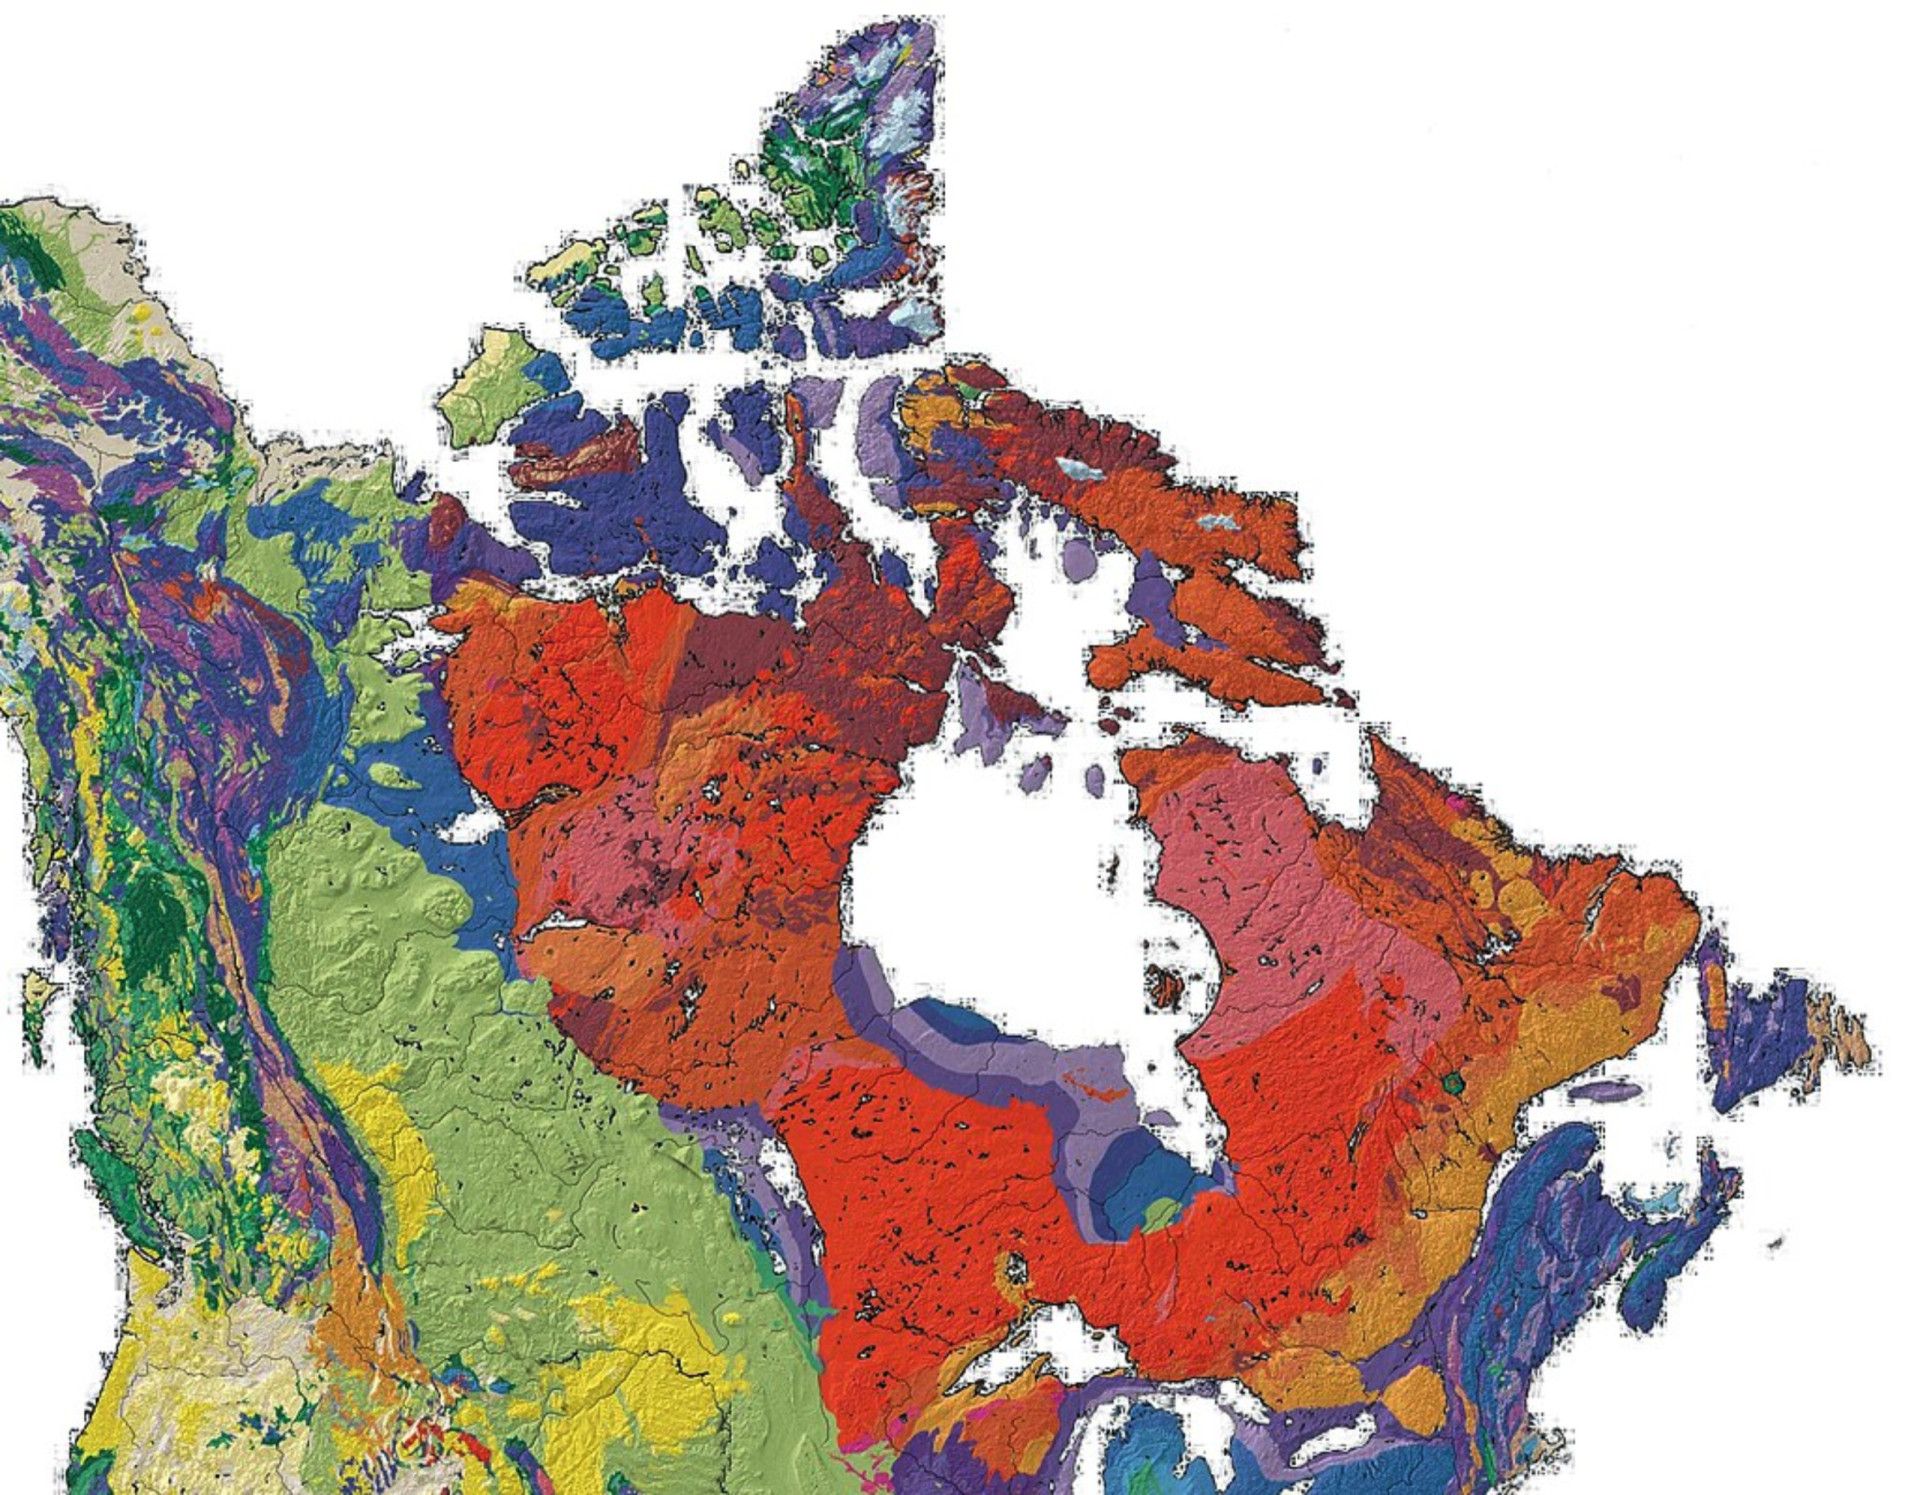 <p>Vieux d'environ 4,28 milliards d'années, le Bouclier canadien est considéré comme la plus ancienne masse continentale de la planète.</p><p><a href="https://www.msn.com/fr-ca/community/channel/vid-7xx8mnucu55yw63we9va2gwr7uihbxwc68fxqp25x6tg4ftibpra?cvid=94631541bc0f4f89bfd59158d696ad7e">Suivez-nous et accédez tous les jours à du contenu exclusif</a></p>